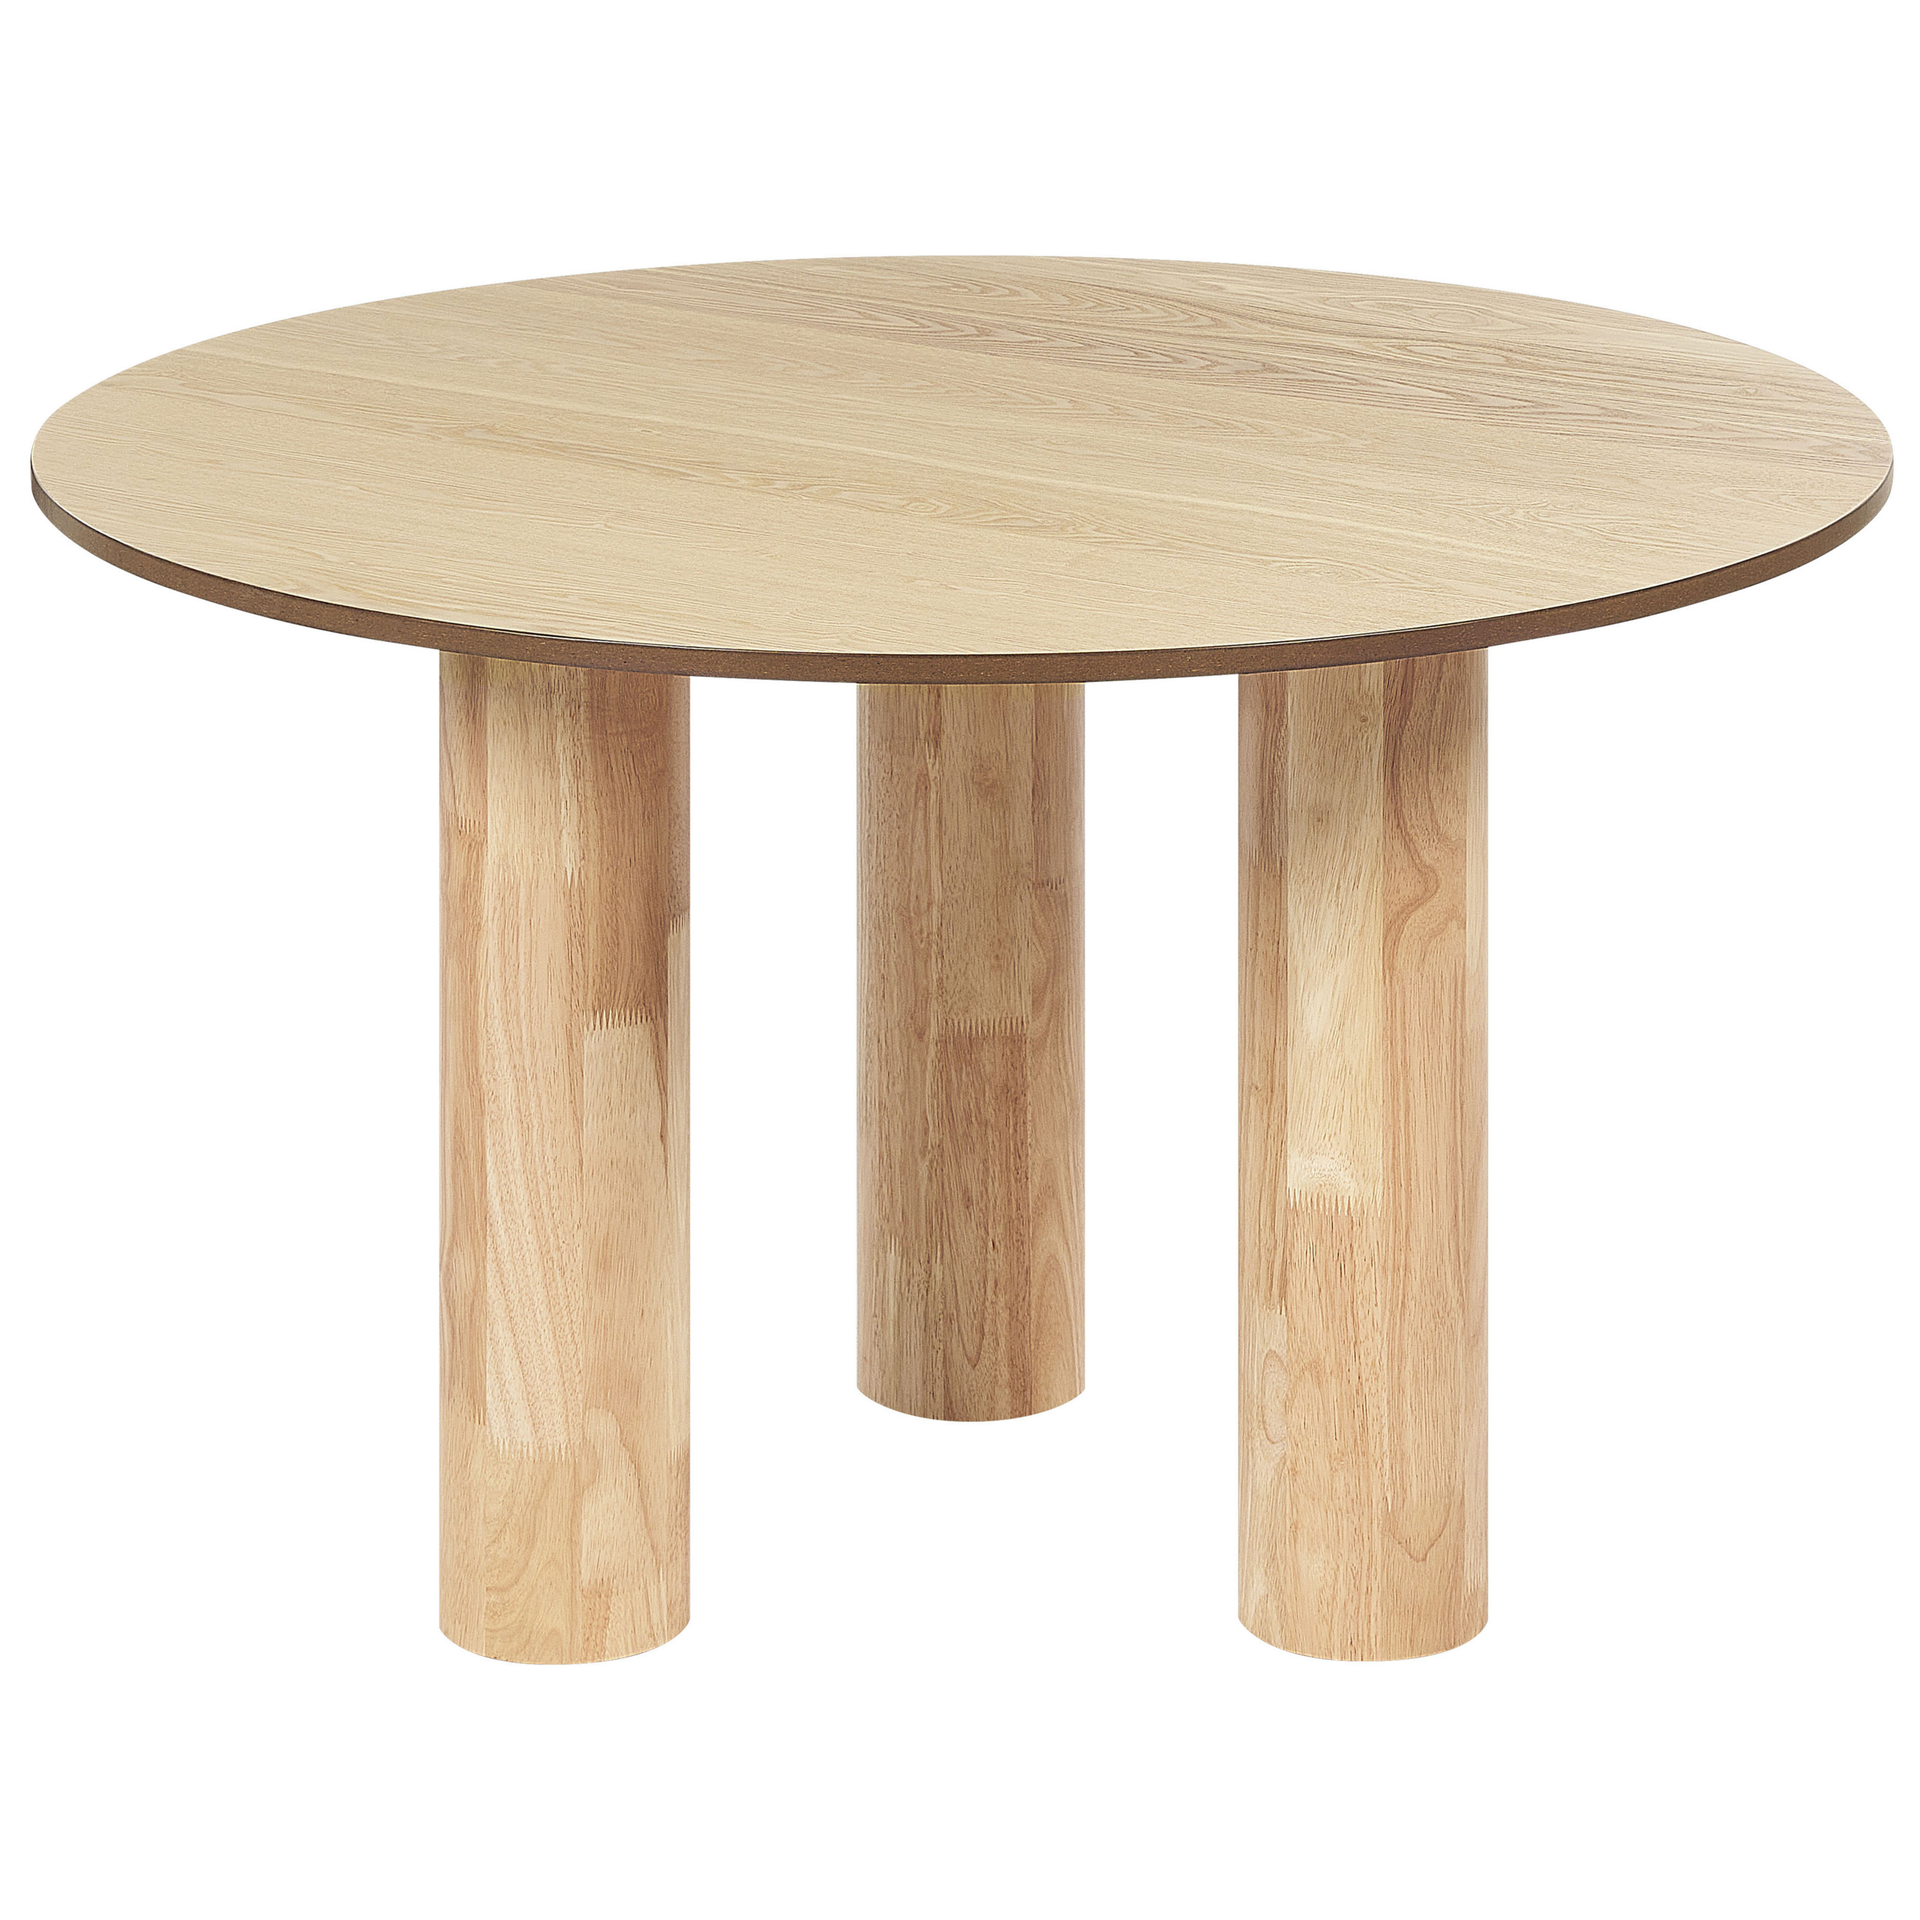 Zdjęcia - Stół kuchenny Stół do jadalni okrągły ⌀ 120 cm jasne drewno ORIN